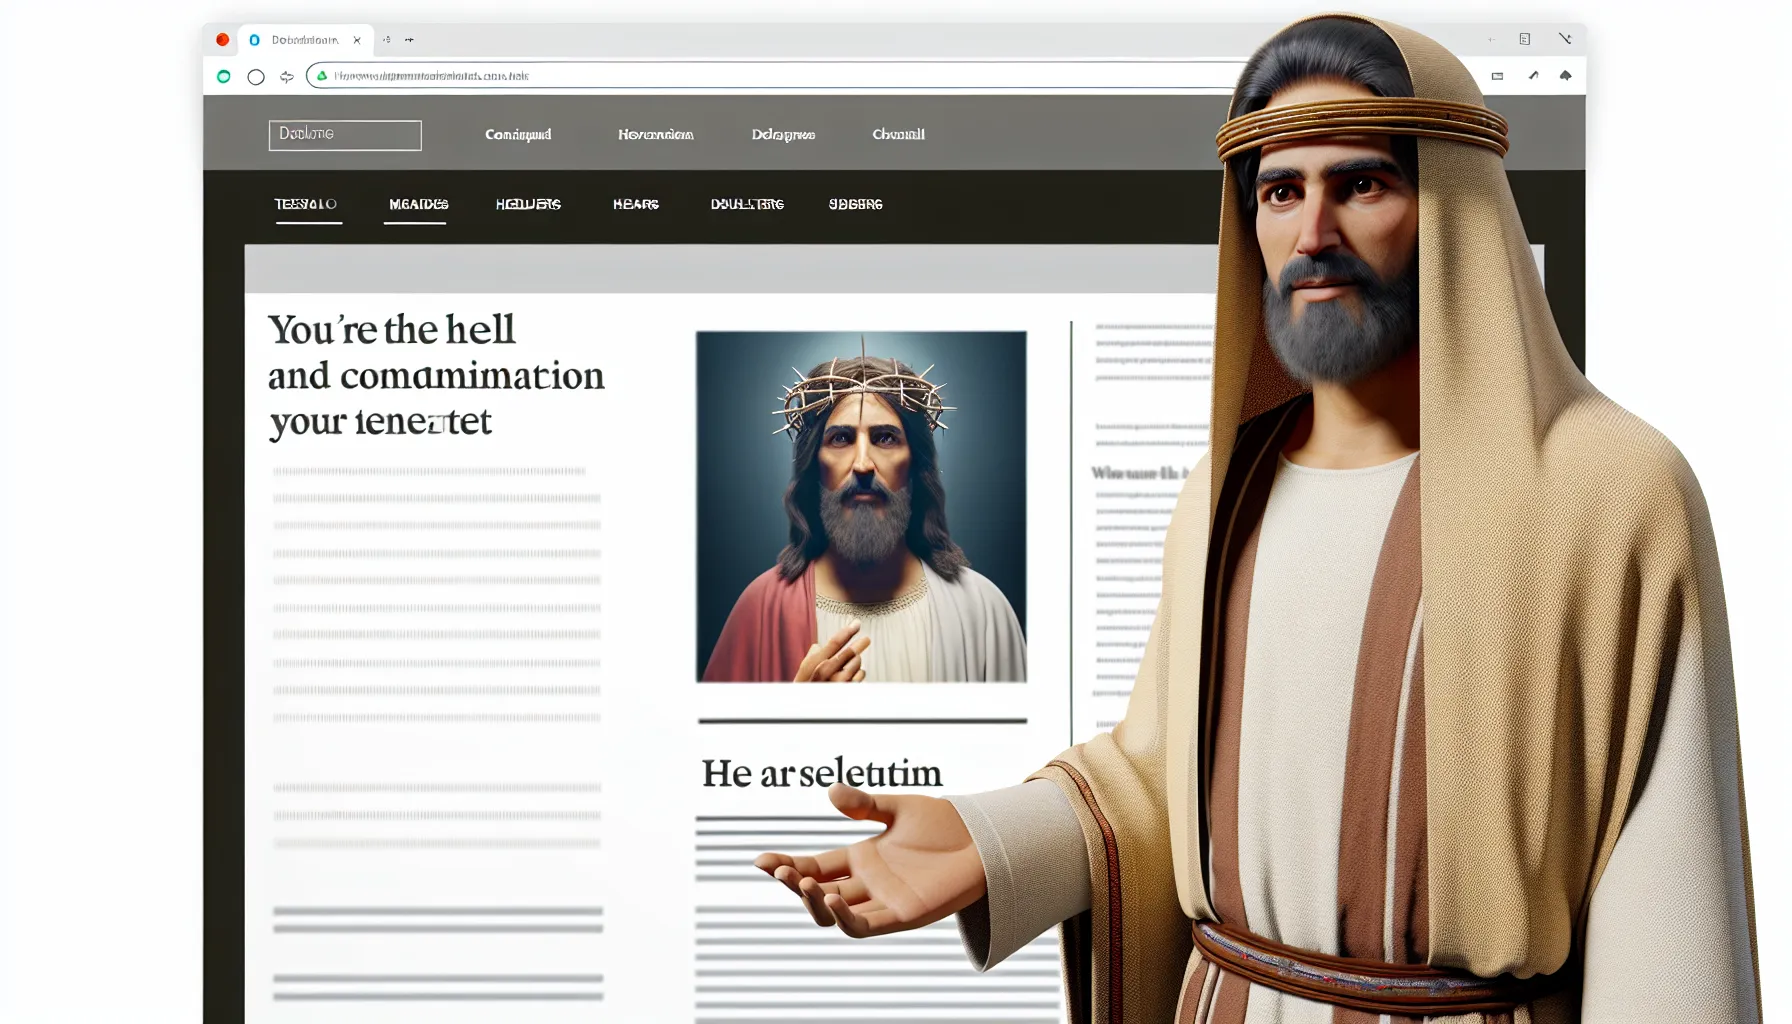 Representación visual de Jesús enseñando sobre el infierno y la condenación en un artículo web.